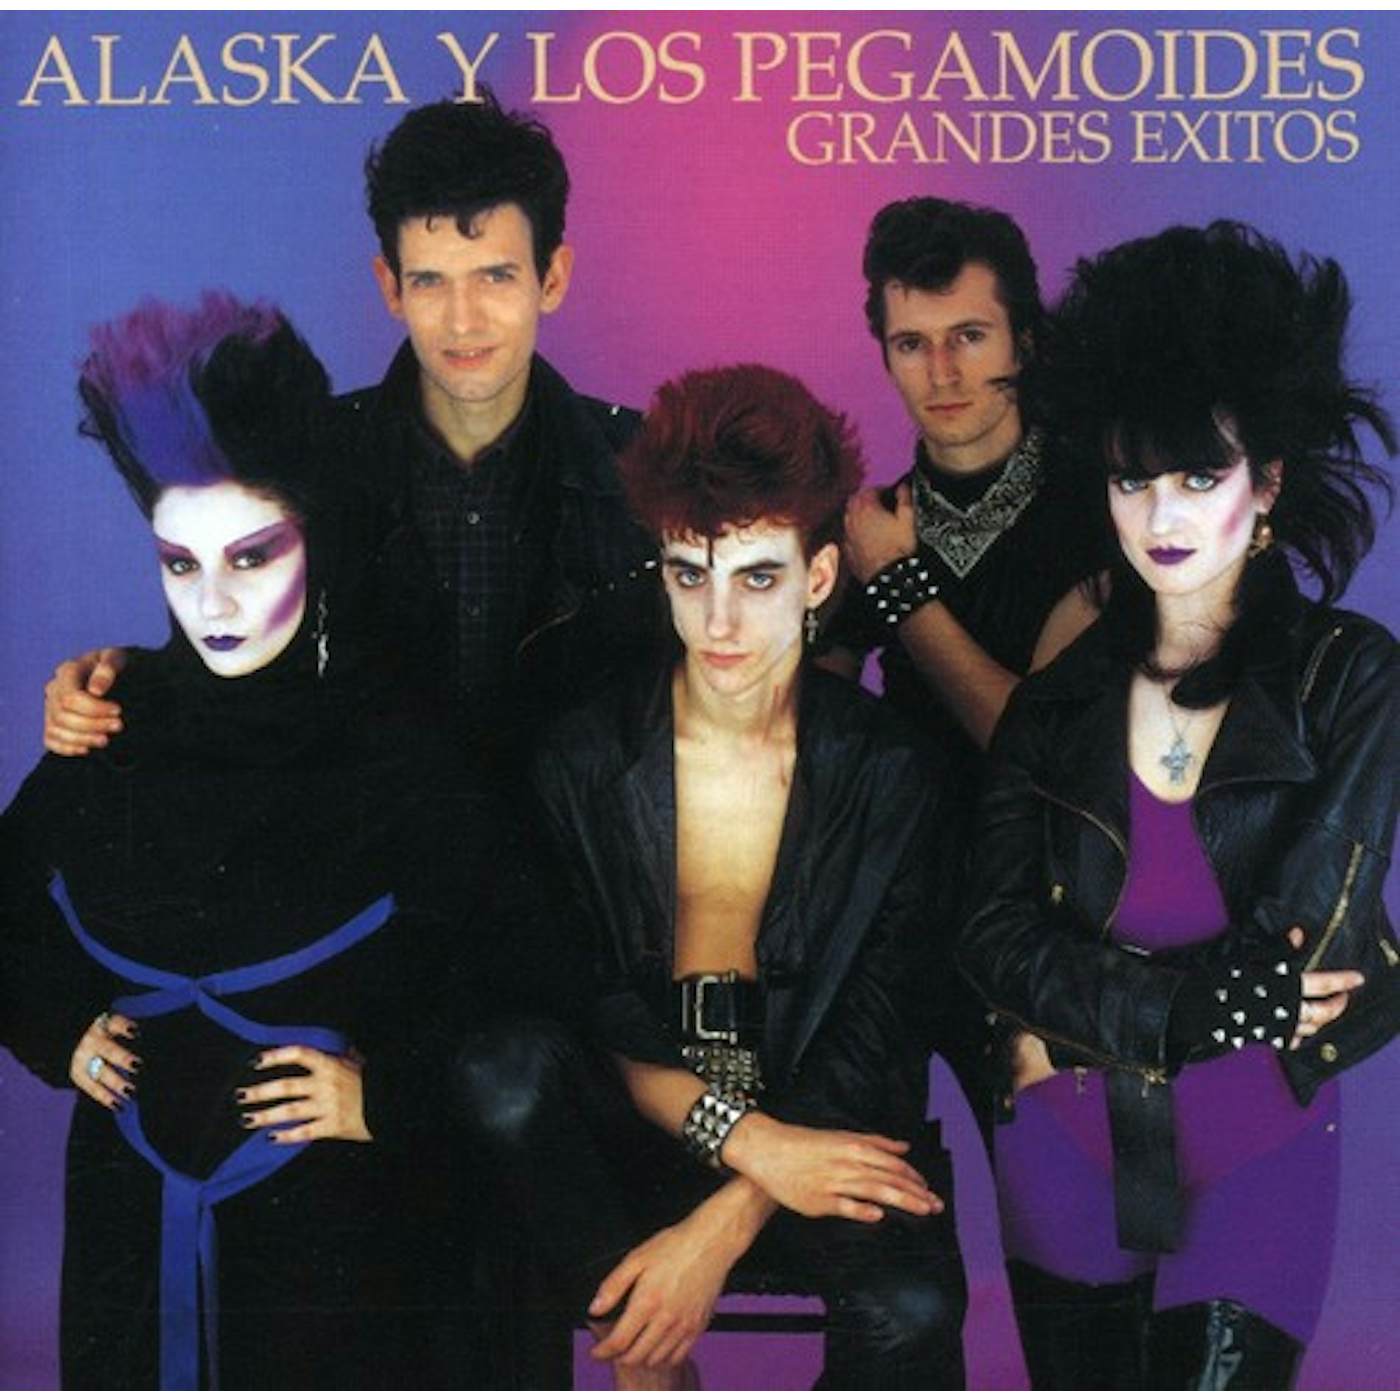 Alaska Y Los Pegamoides GRANDES EXITOS CD